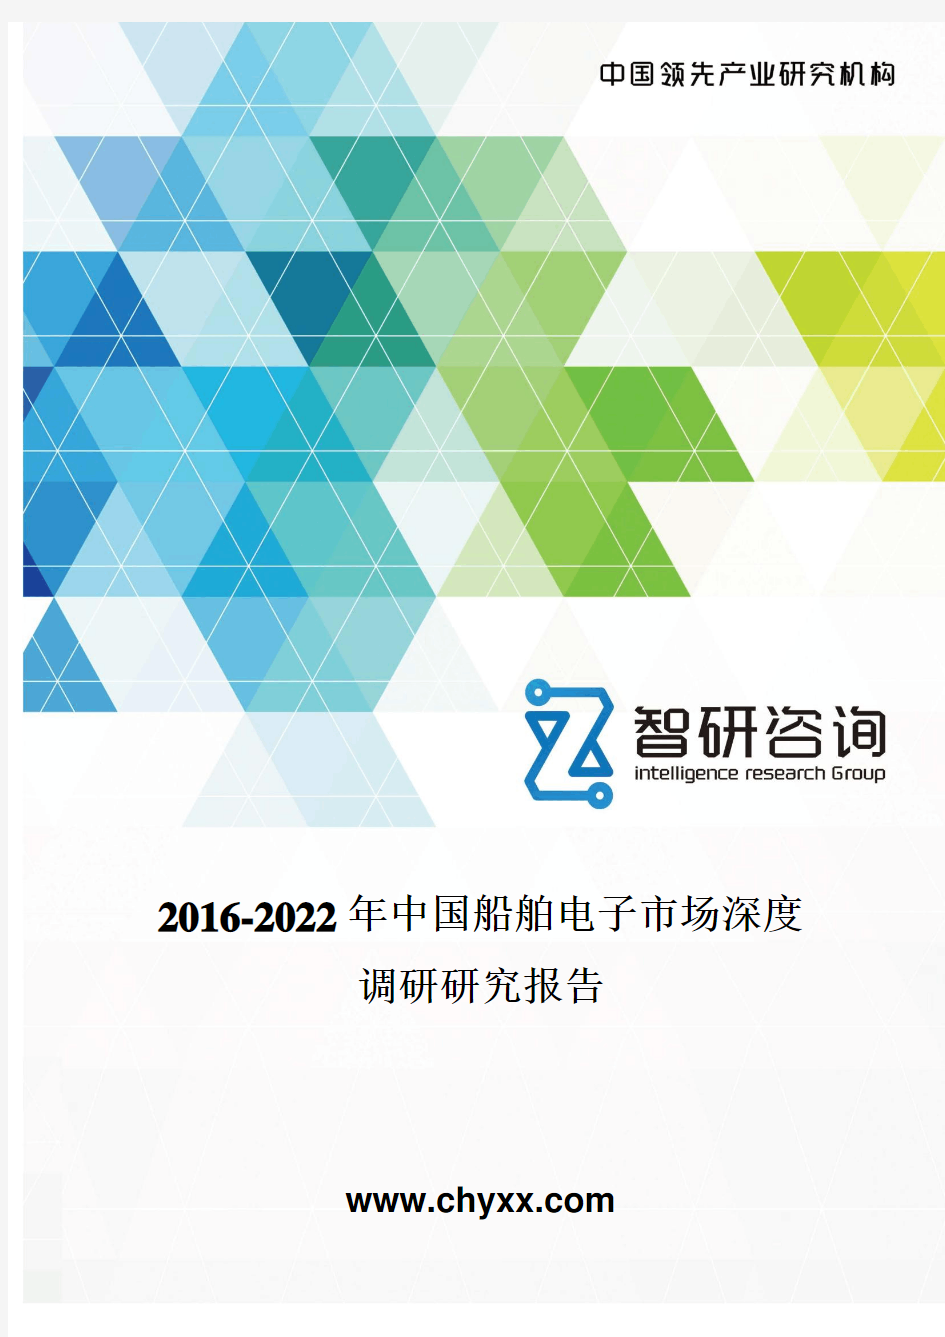 2016-2022年中国船舶电子市场深度调研研究报告